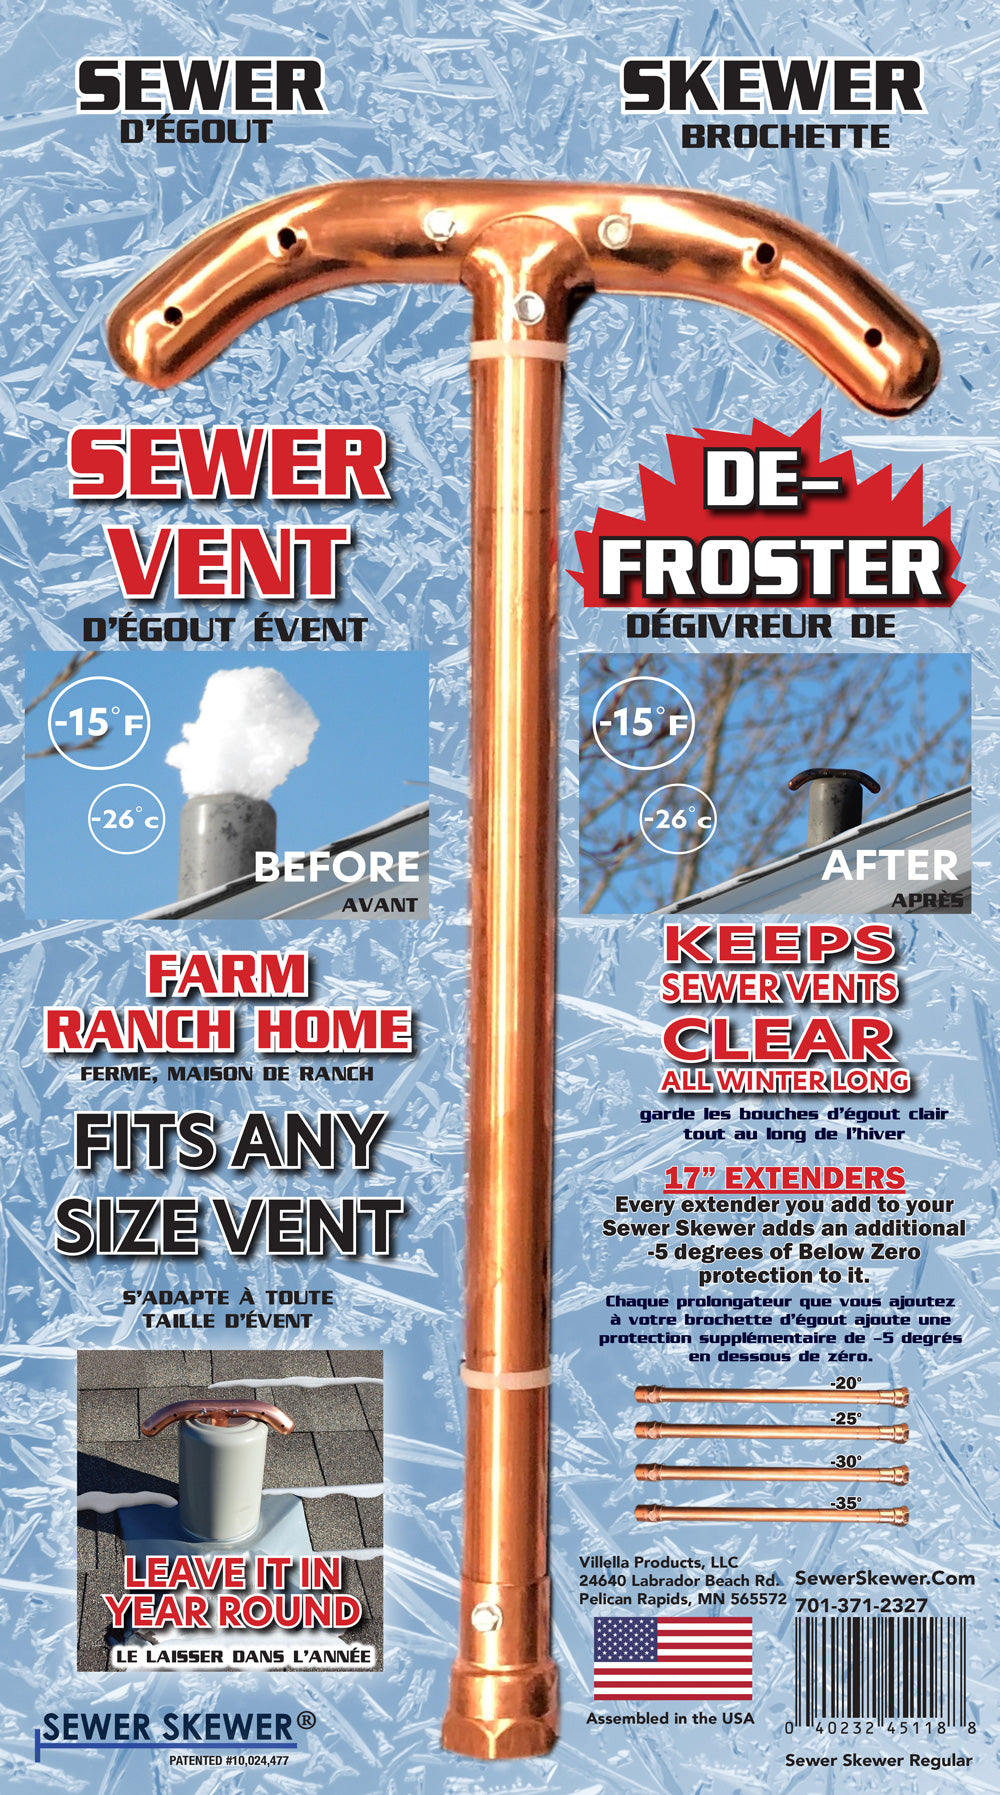 Regular Sewer Skewer - Sewer Skewer - Sewer Vent Defroster